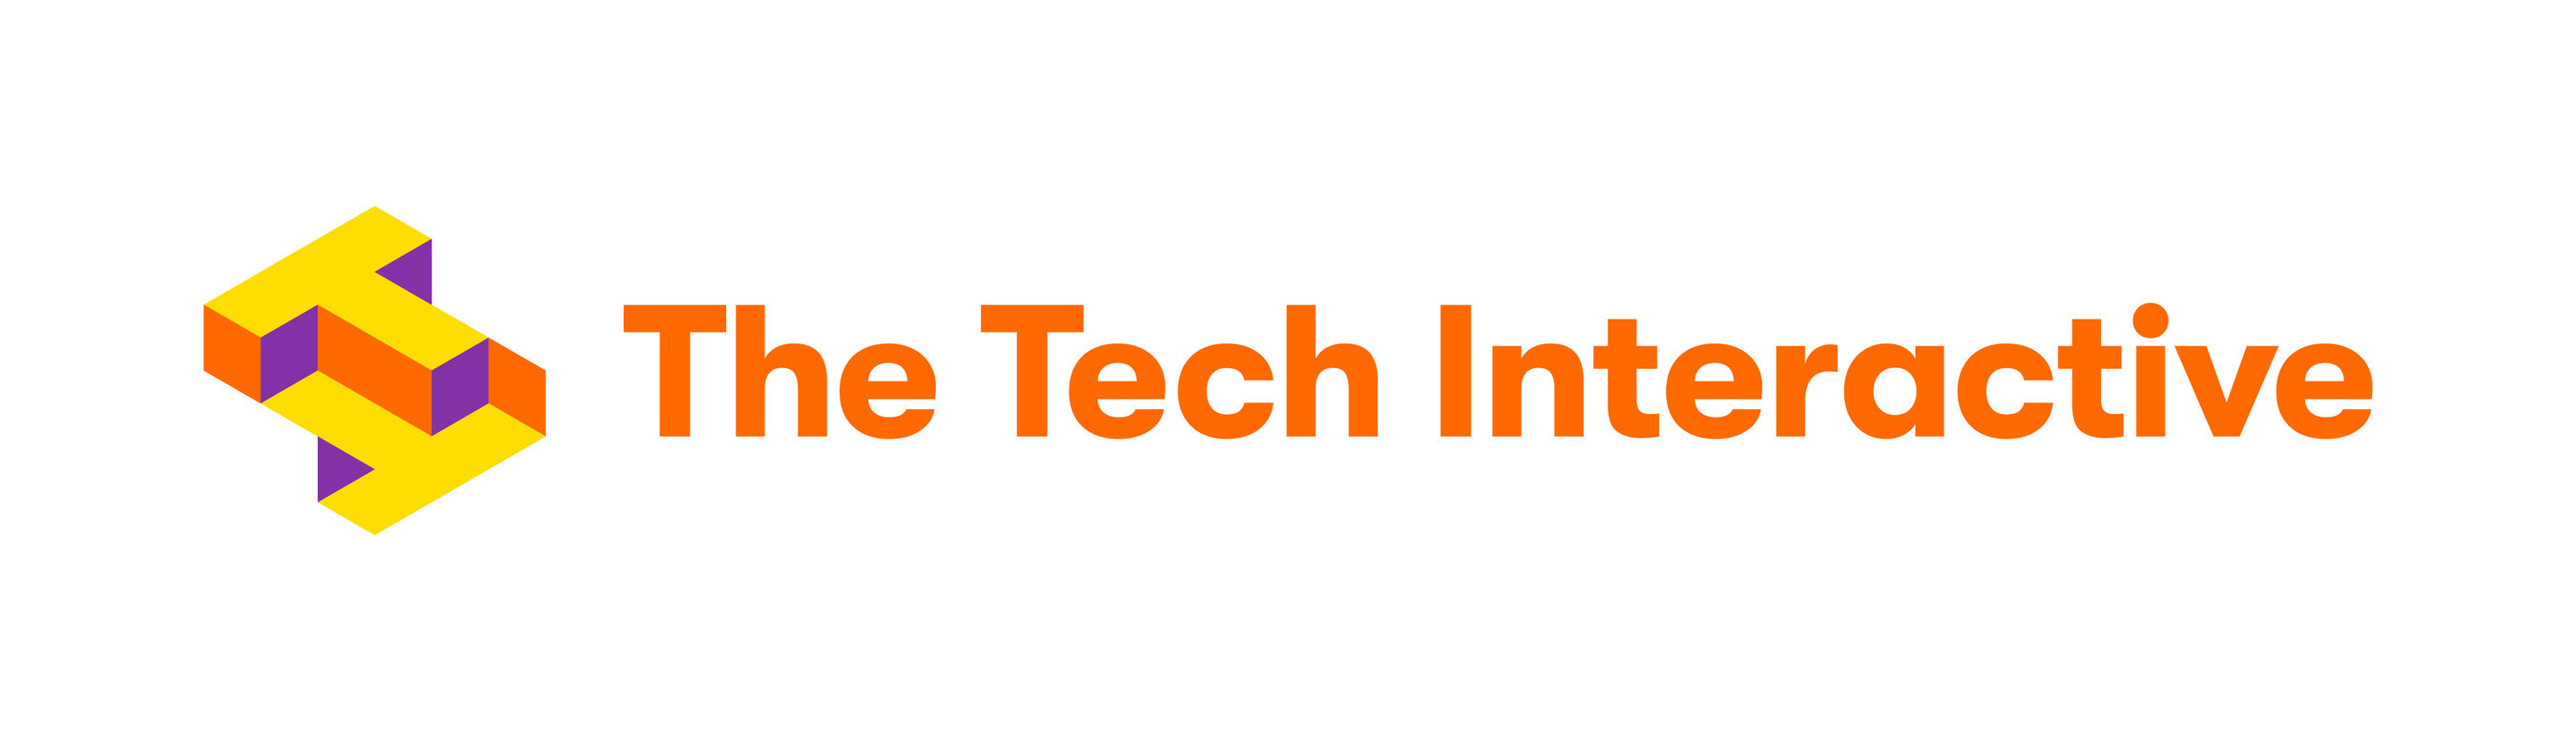 The Tech Interactive logo (PRNewsfoto/The Tech Interactive)